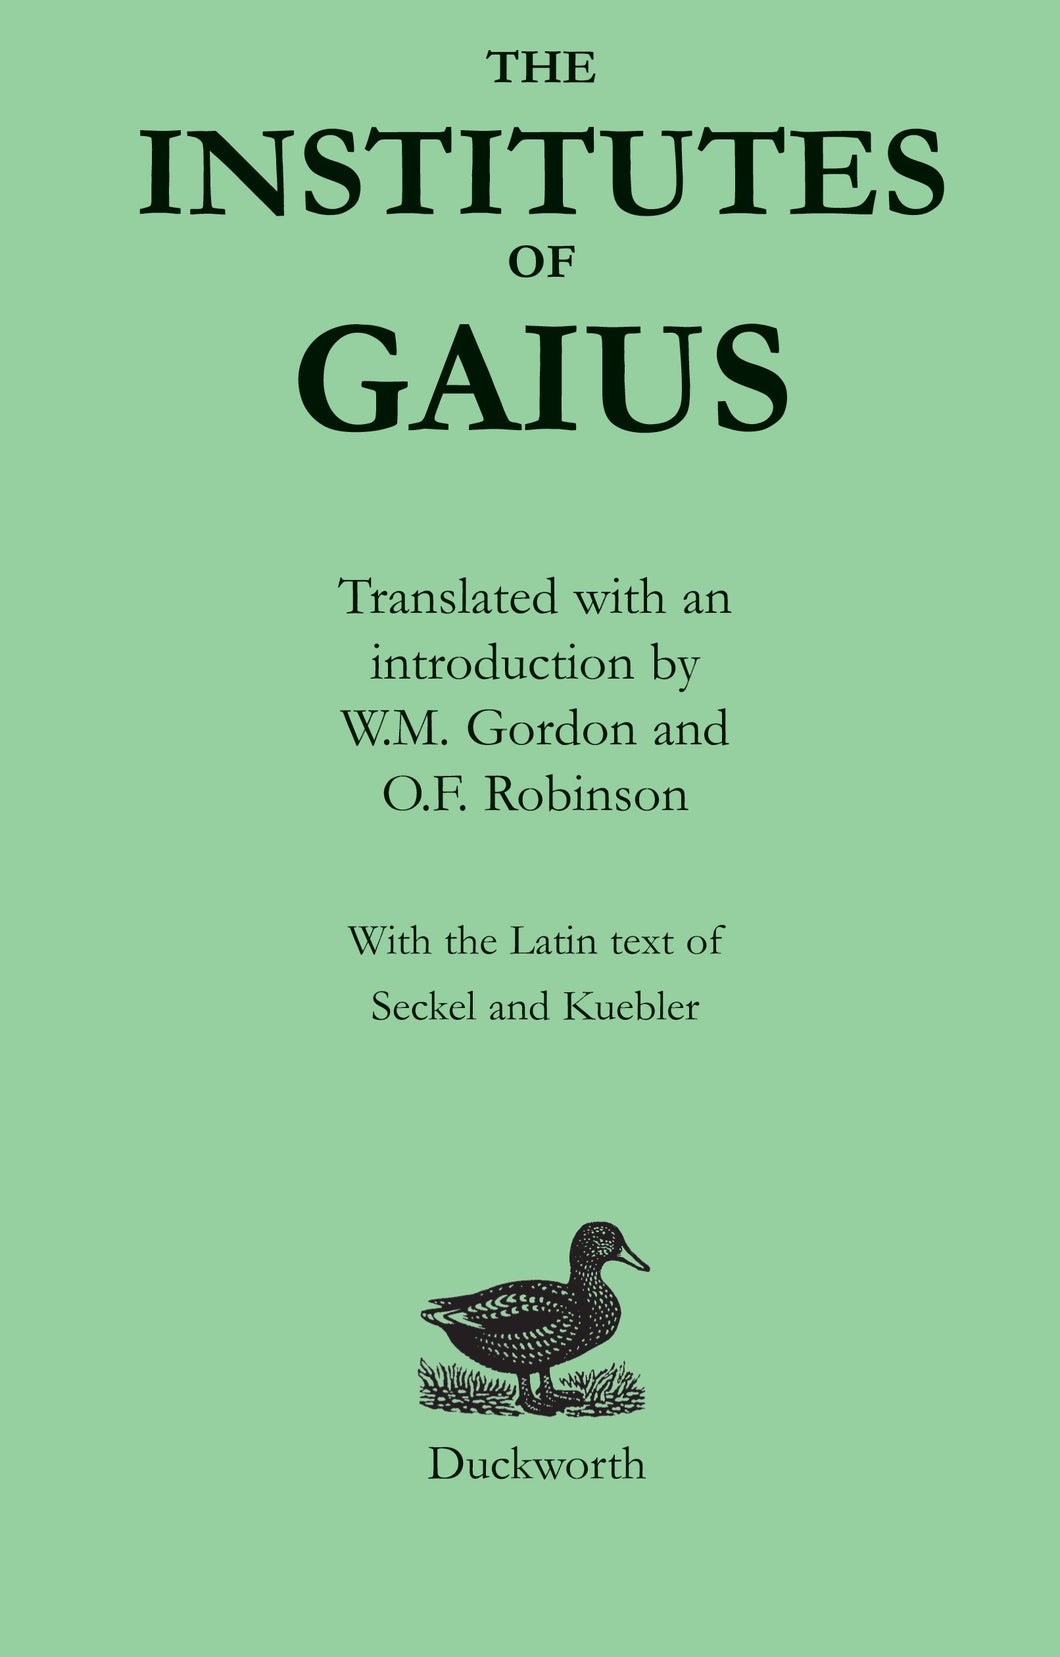 The Institutes of Gaius